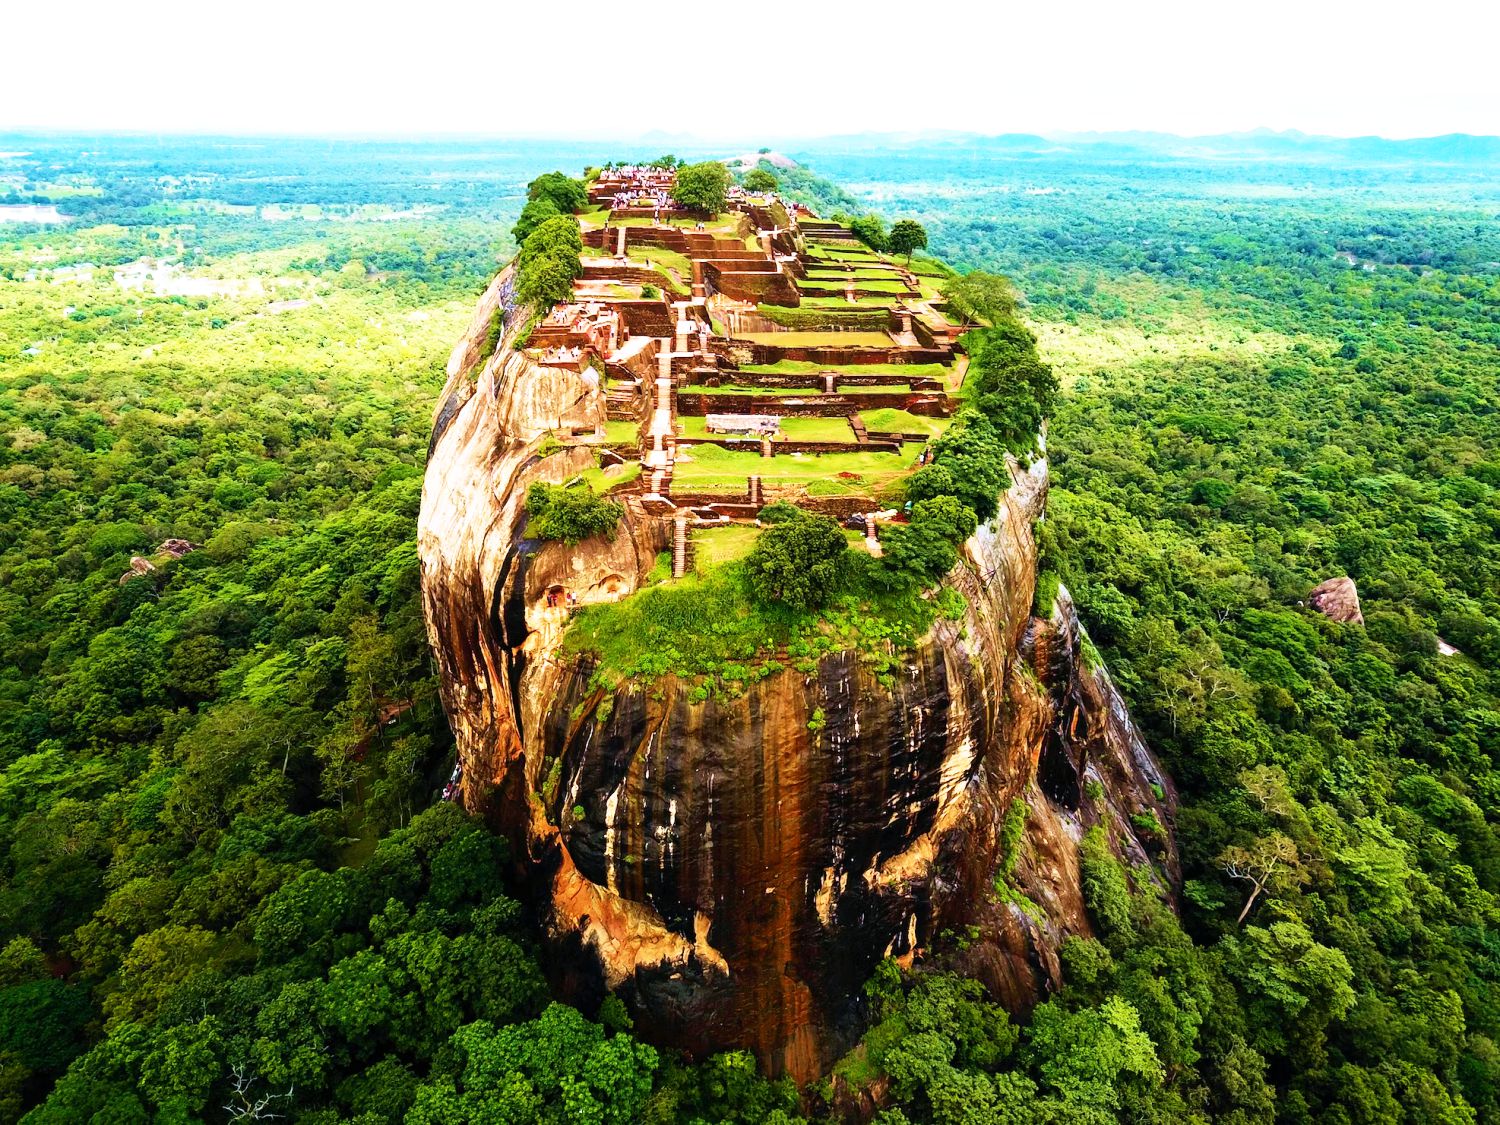 Ngắm thành phố với những khu vườn đẹp như cổ tích tại Sri Lanka   - Ảnh 4.